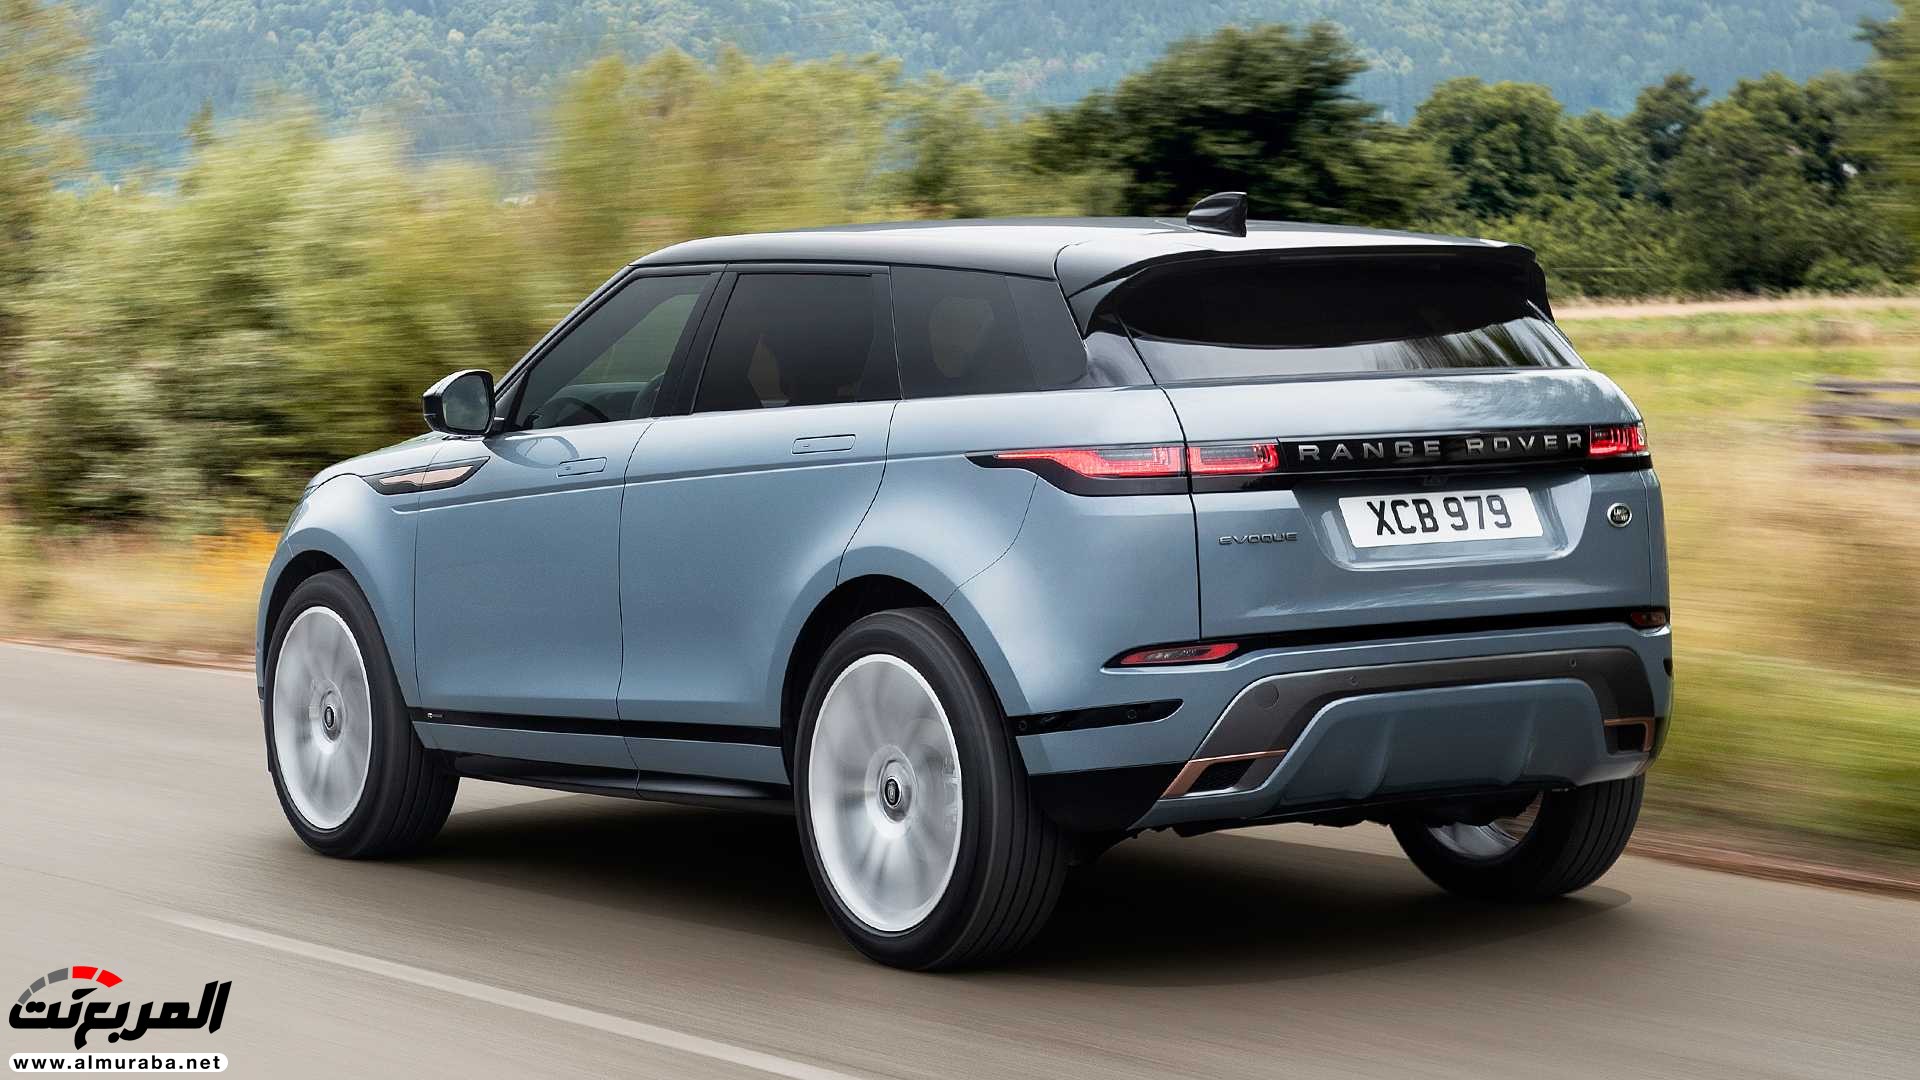 اهم 7 معلومات عن رنج روفر ايفوك 2020 الجديدة كلياً Range Rover Evoque 8